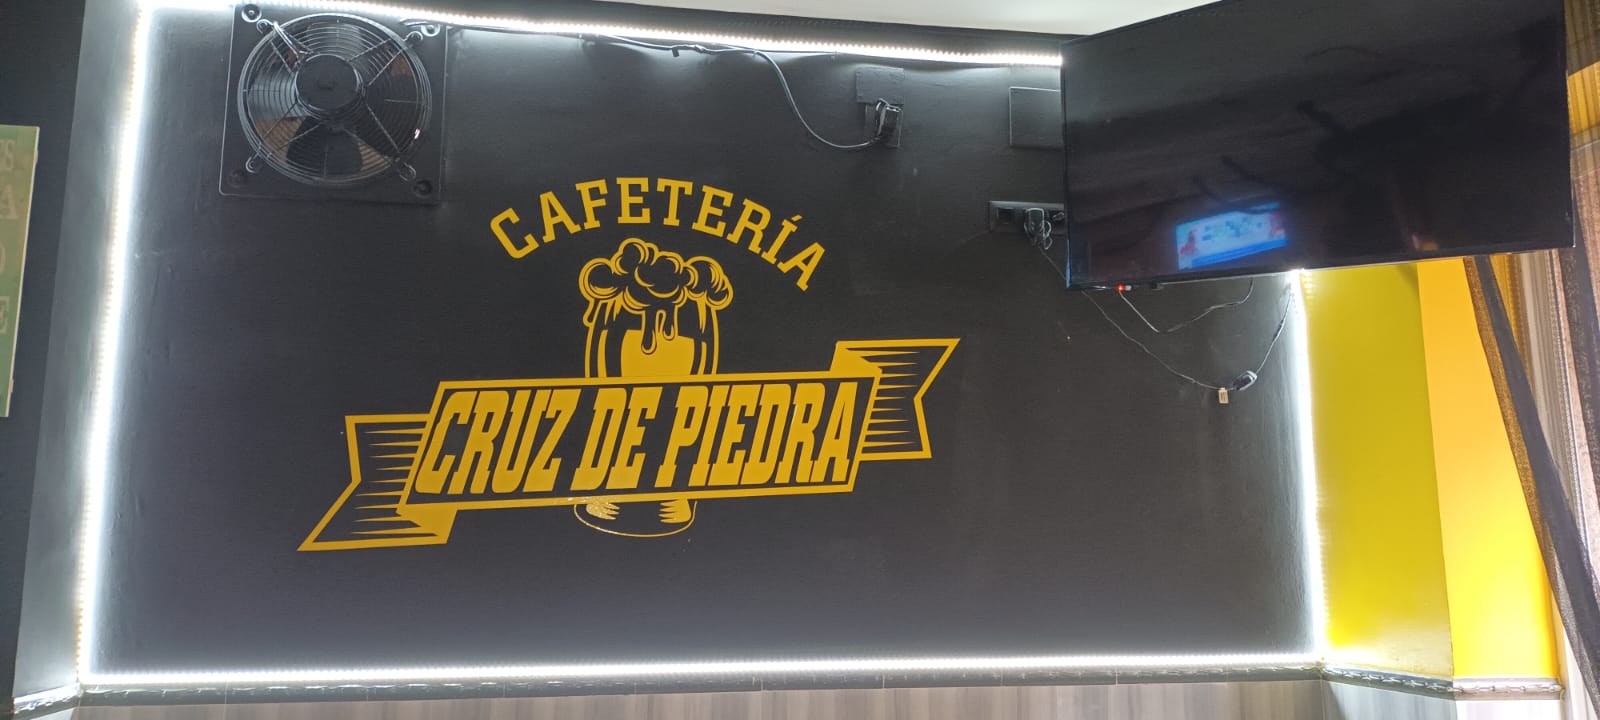 Images Cafetería Cruz de Piedra